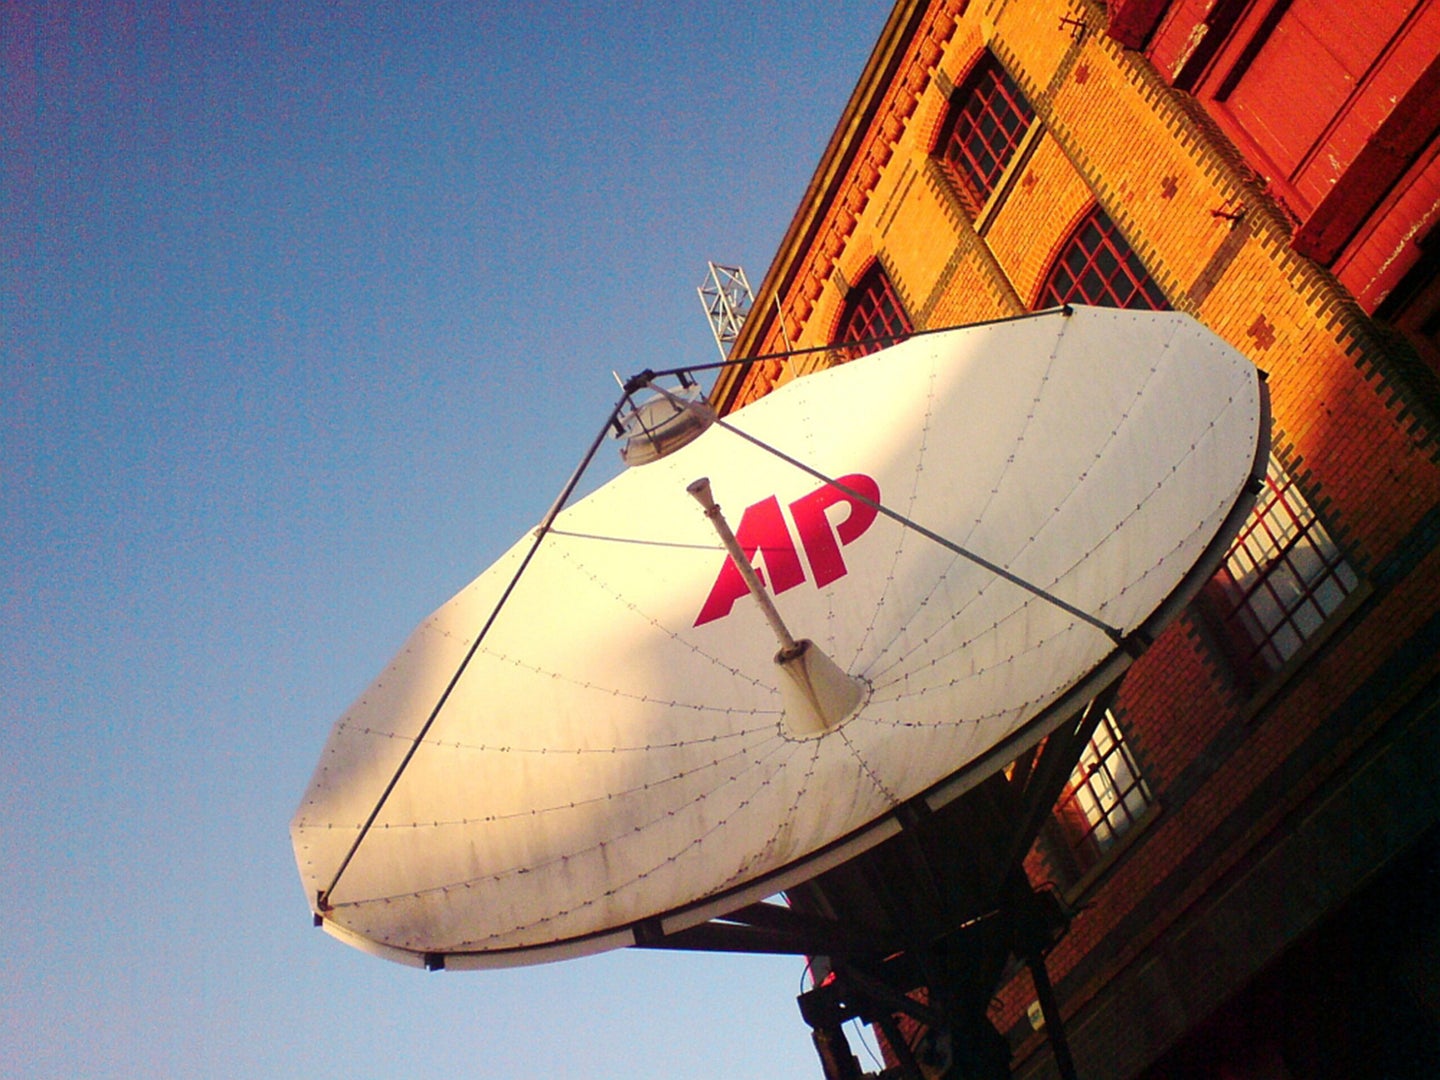 An AP satellite.